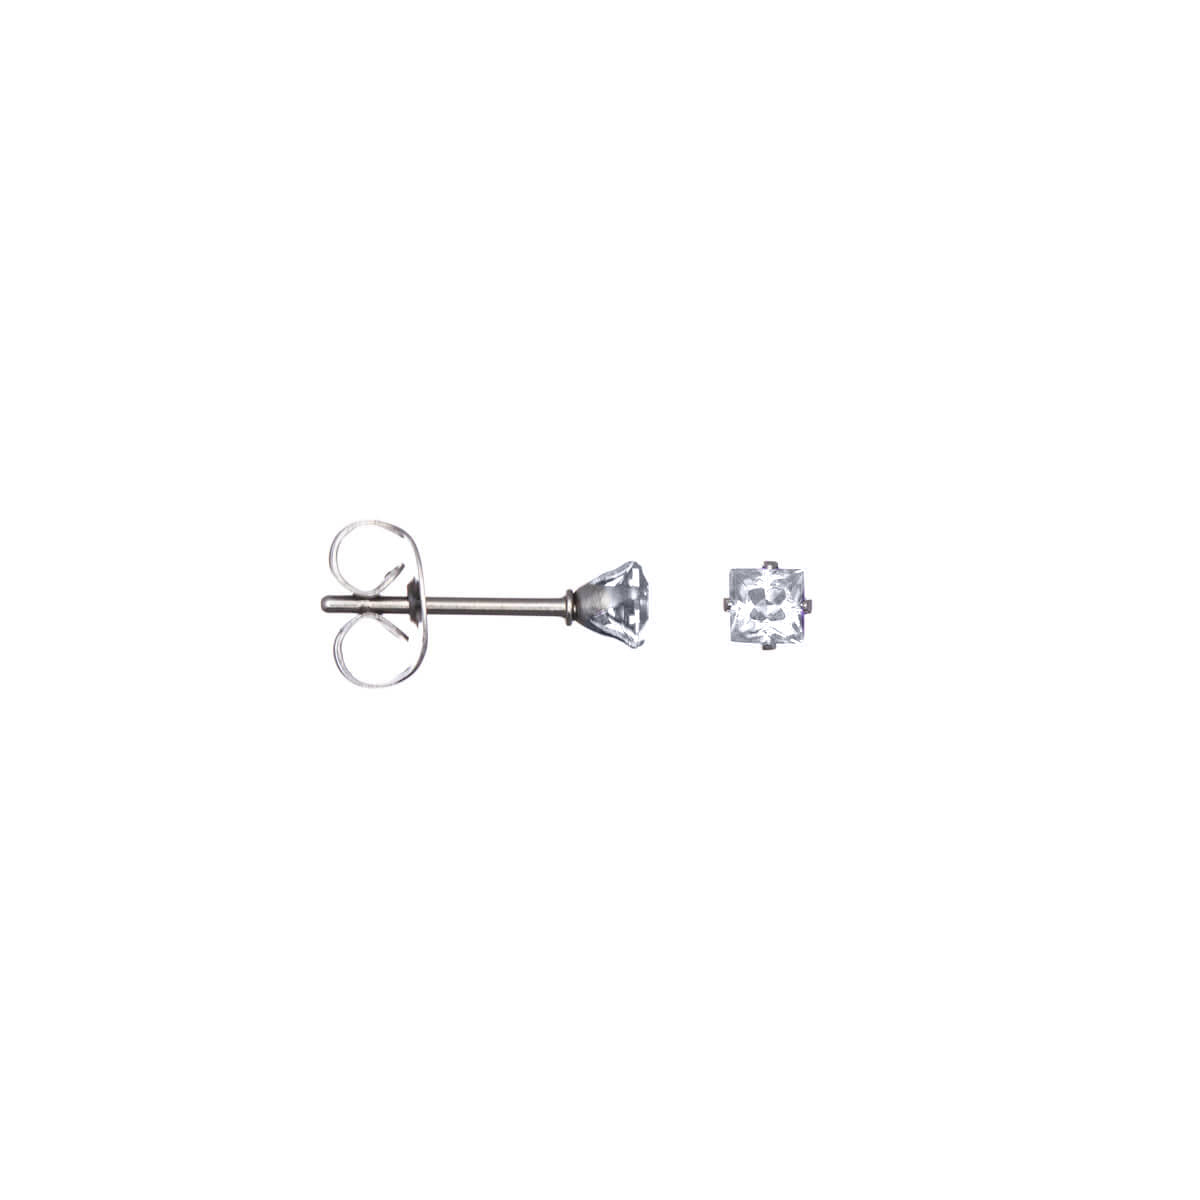 Square zirconia earrings 3mm (Steel 316L)